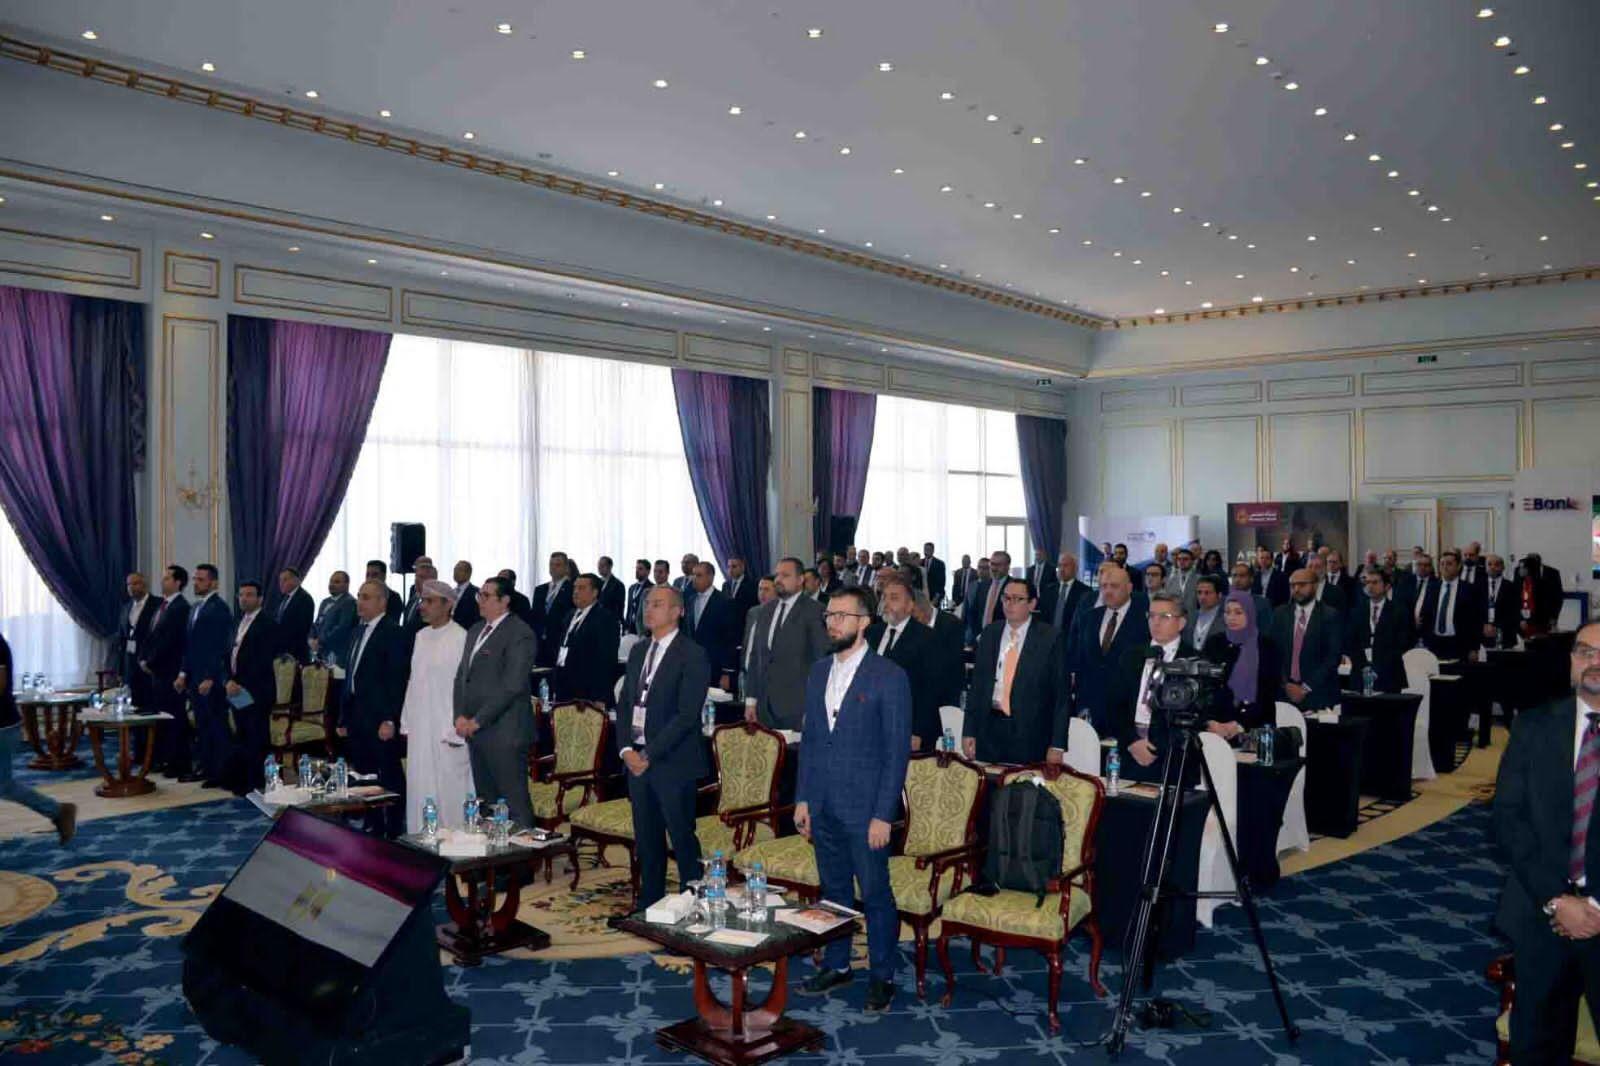 الملتقى السنوي لرؤساء إدارات المخاطر بالمصارف العربية